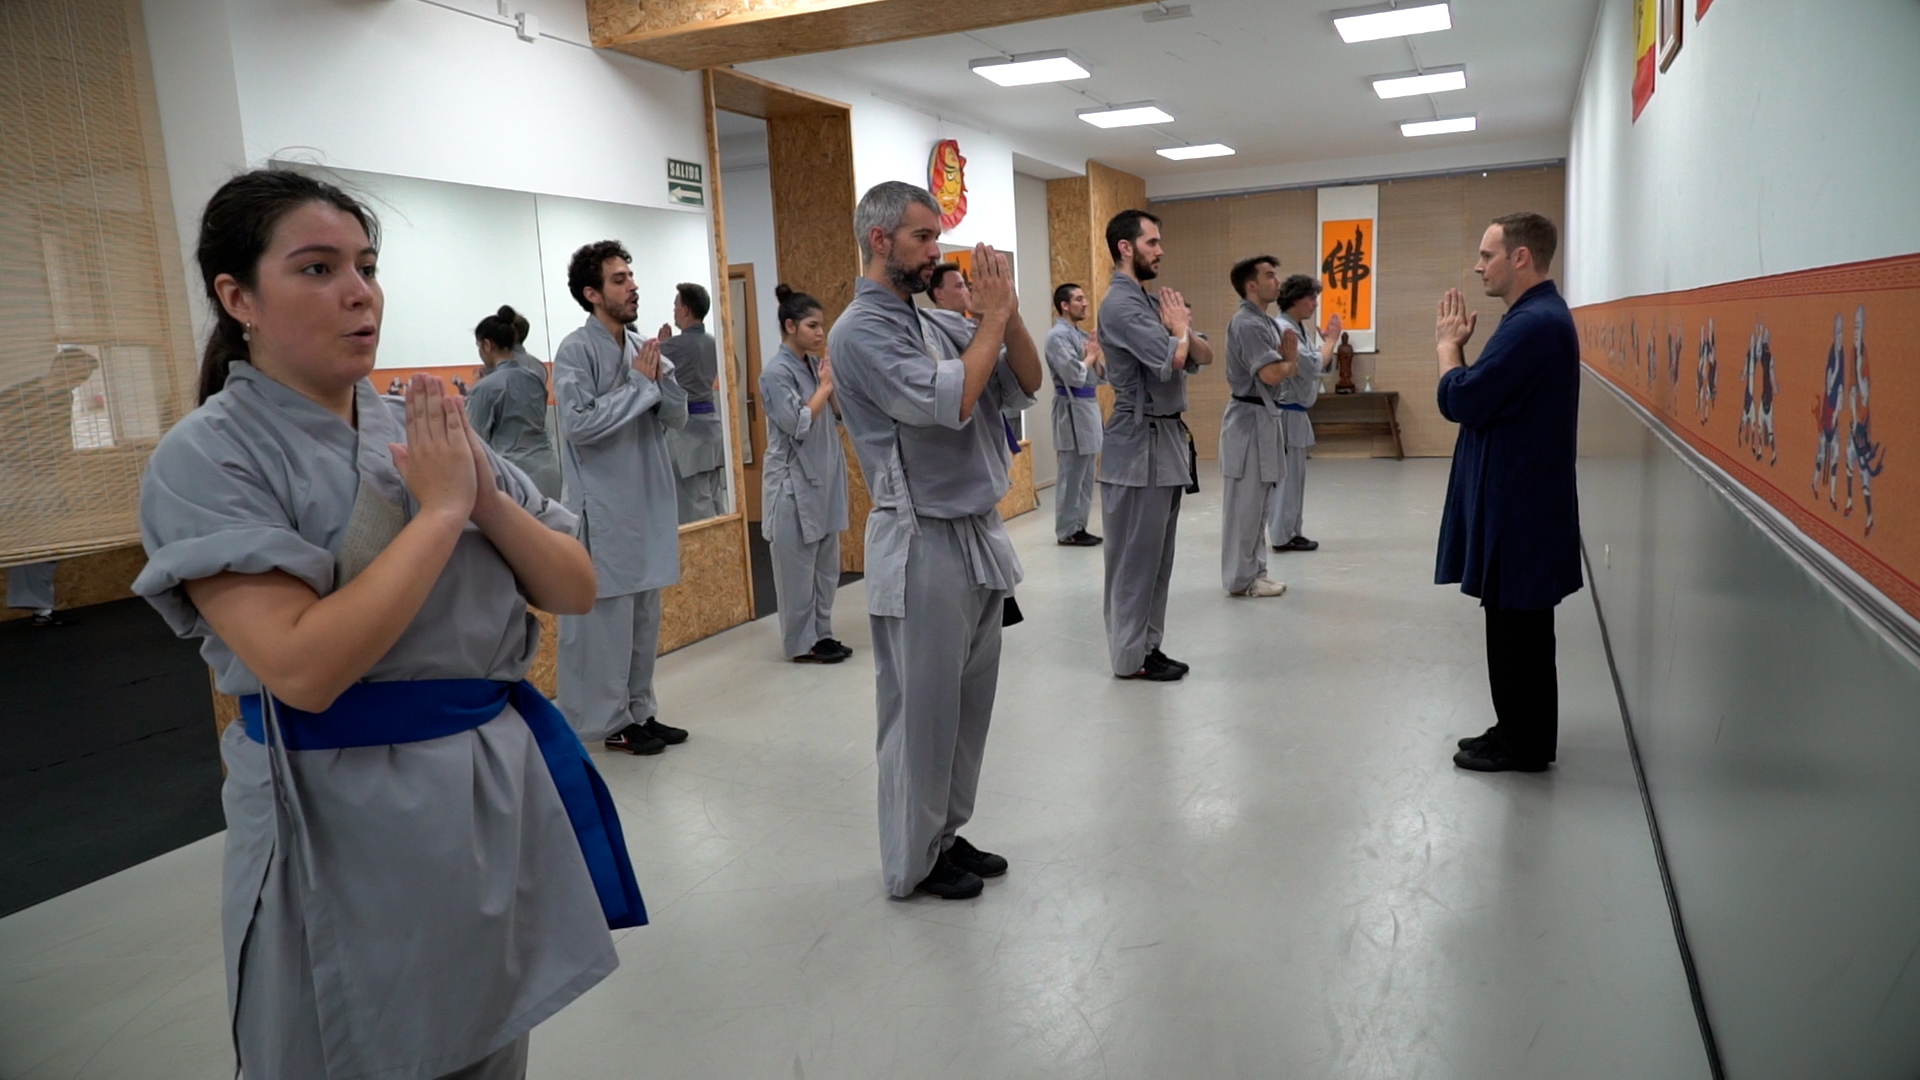 Los alumnos agradecen a su maestro la clase de kung fu recibida.